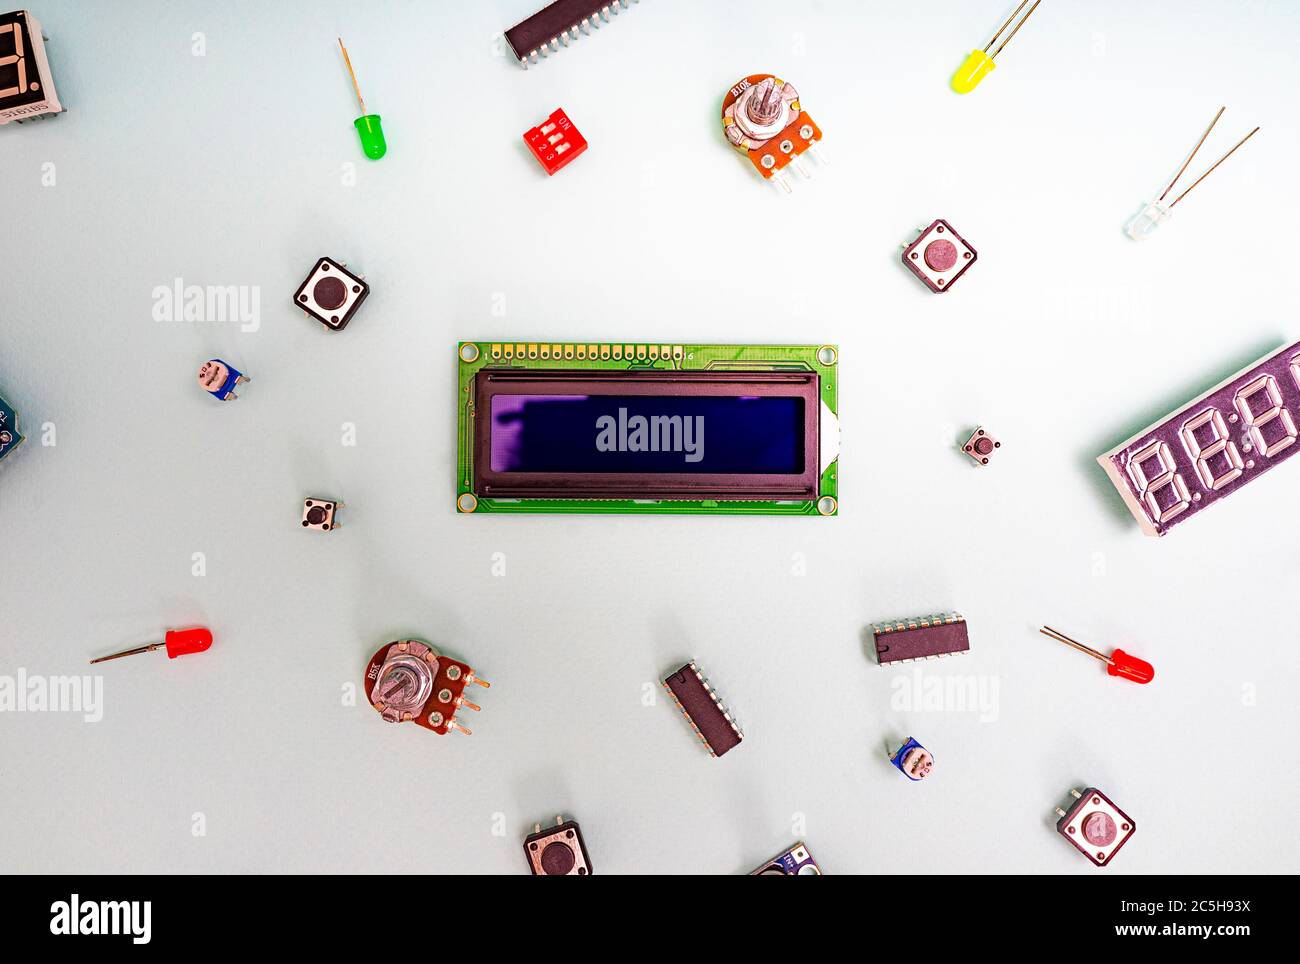 Mikroelektronik arduino DIY-Komponenten auf einem hellen Hintergrund, Draufsicht, Kopierraum. Mikrocontroller, Platinen, Sensoren, leds, Controller Stockfoto